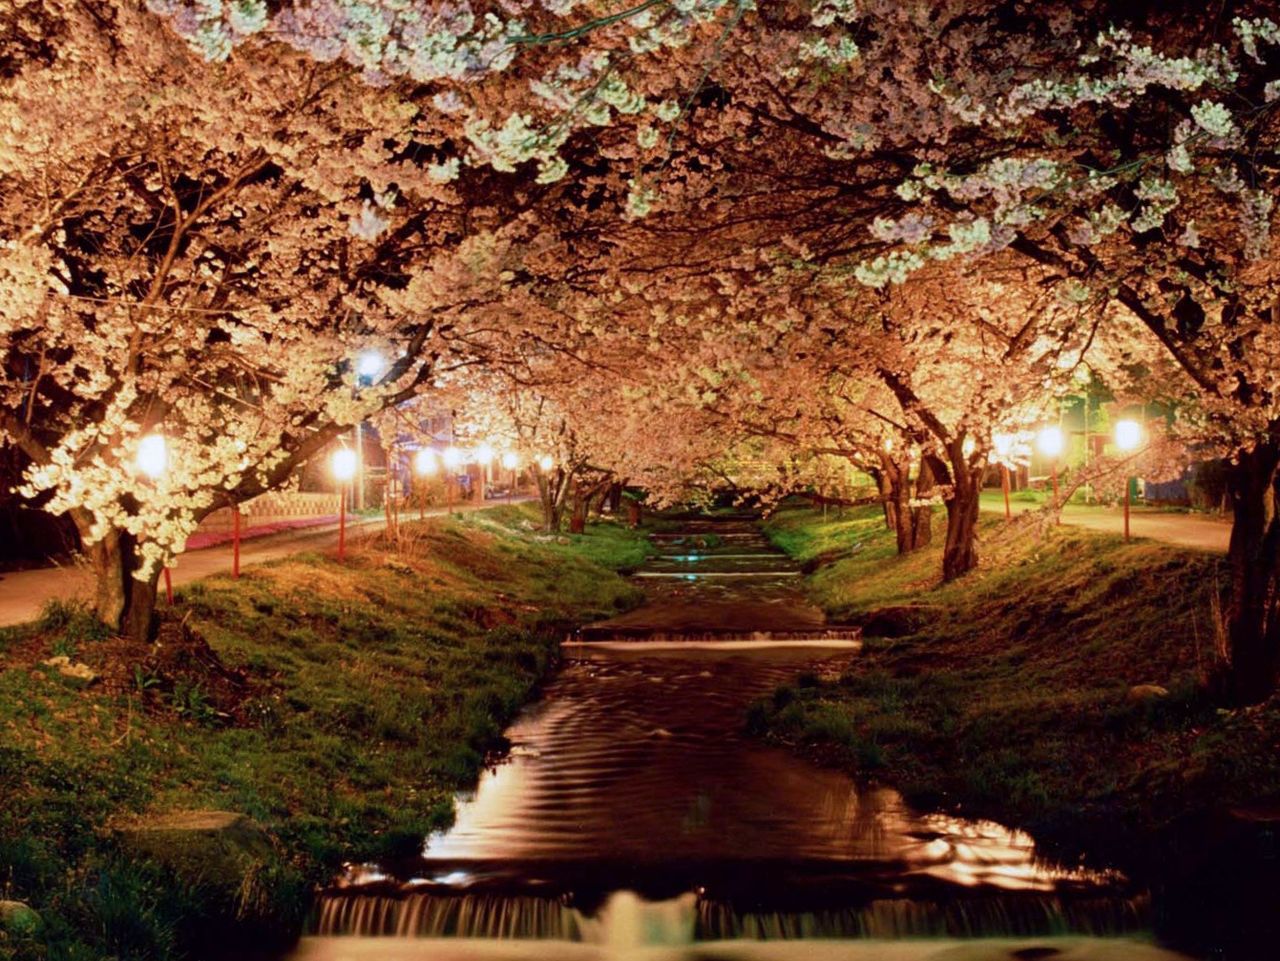 La iluminación nocturna le añade encanto al paisaje (imagen cortesía del responsable del Departamento de Industria, Comercio y Turismo de Inawashiro).